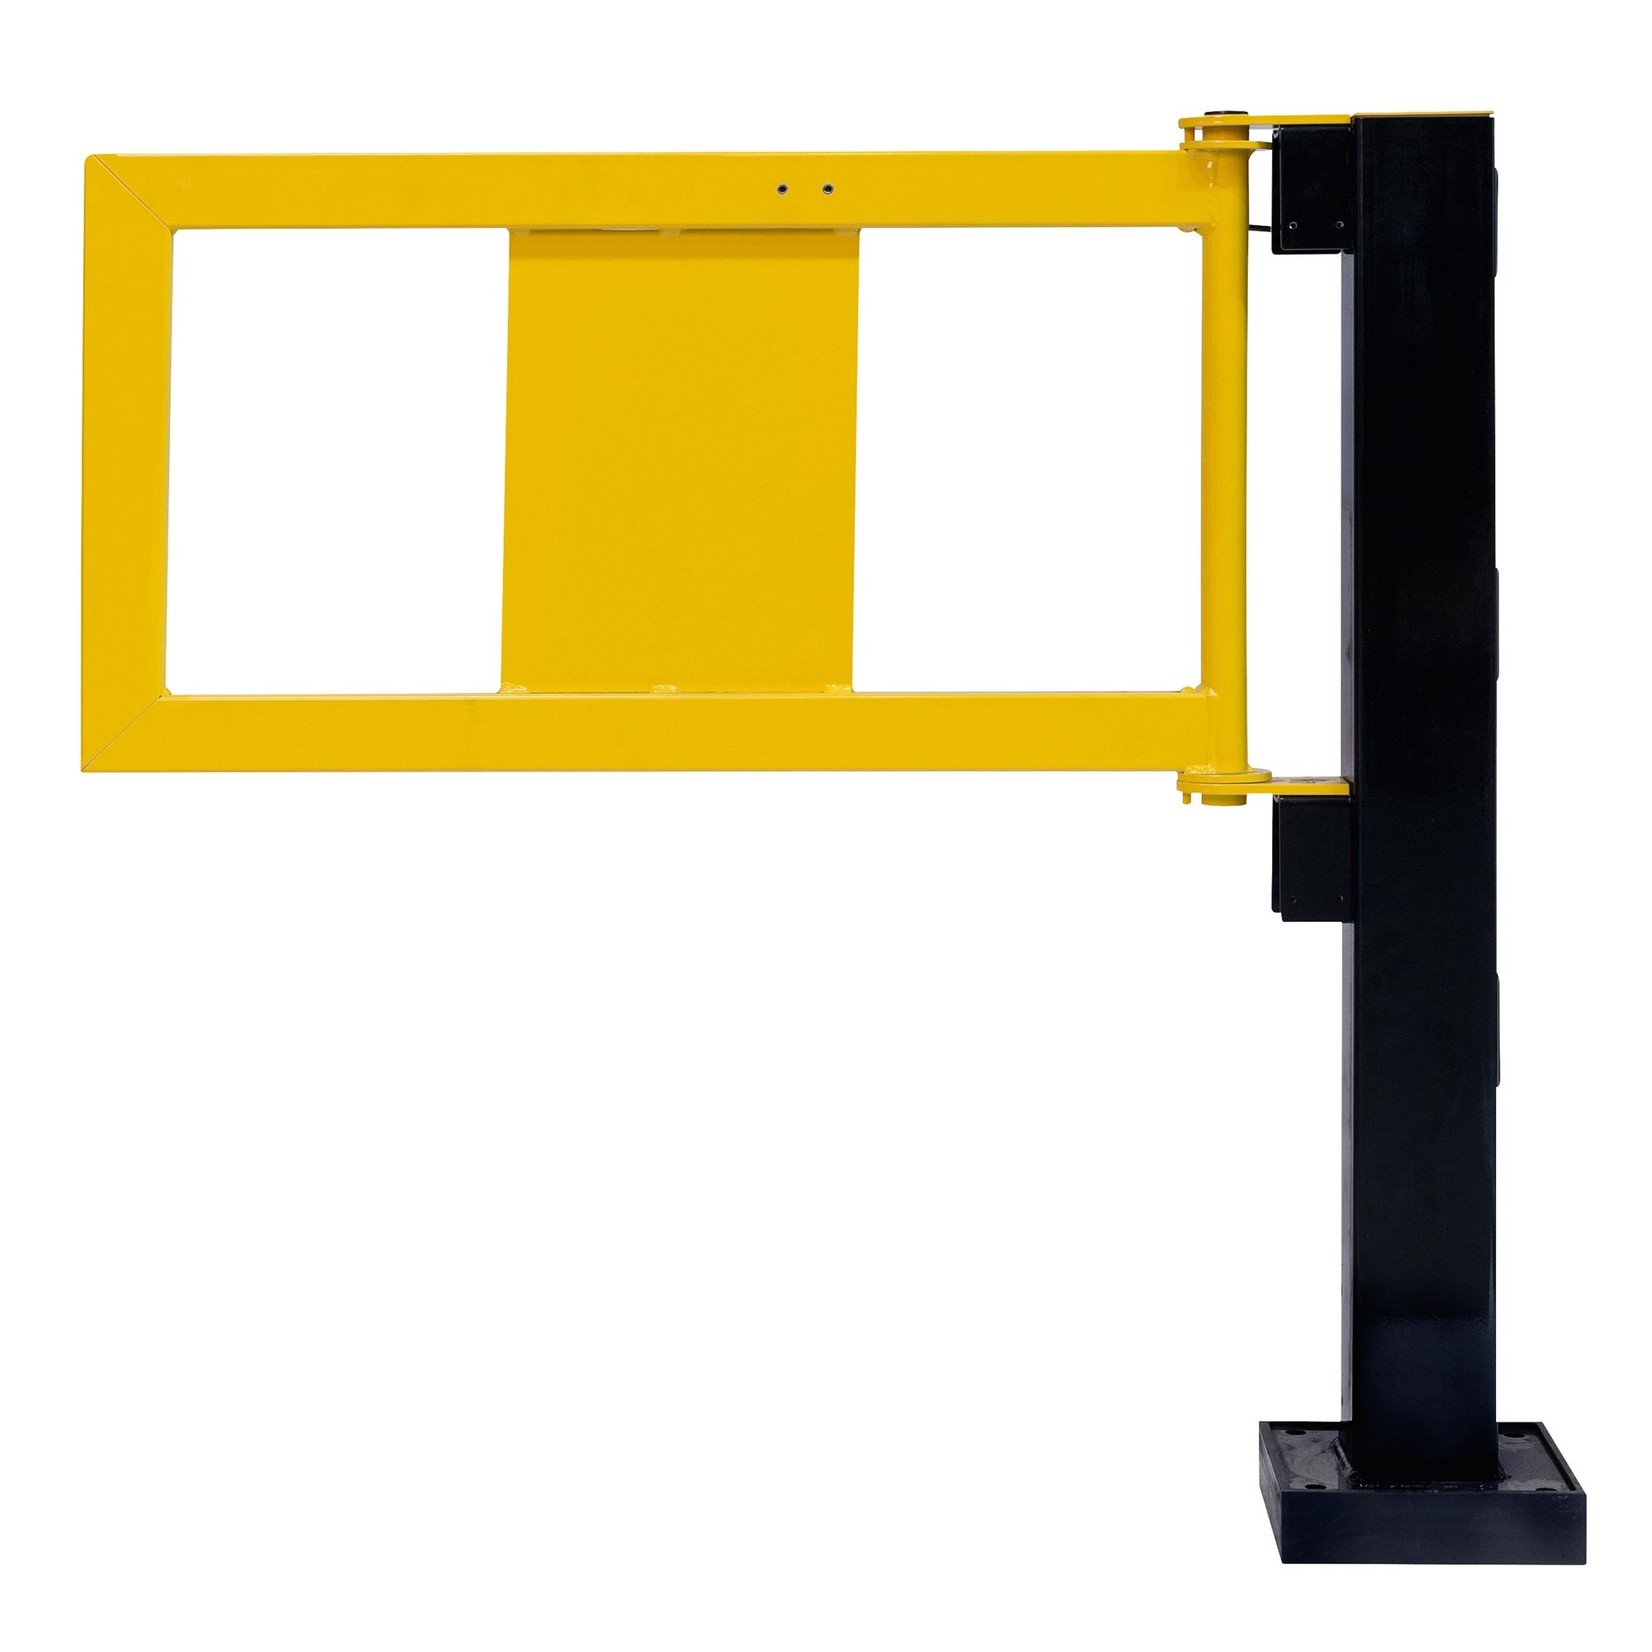 BLACK BULL deur met gasdrukveer voor magazijn railing HYBRID - zwart/geel